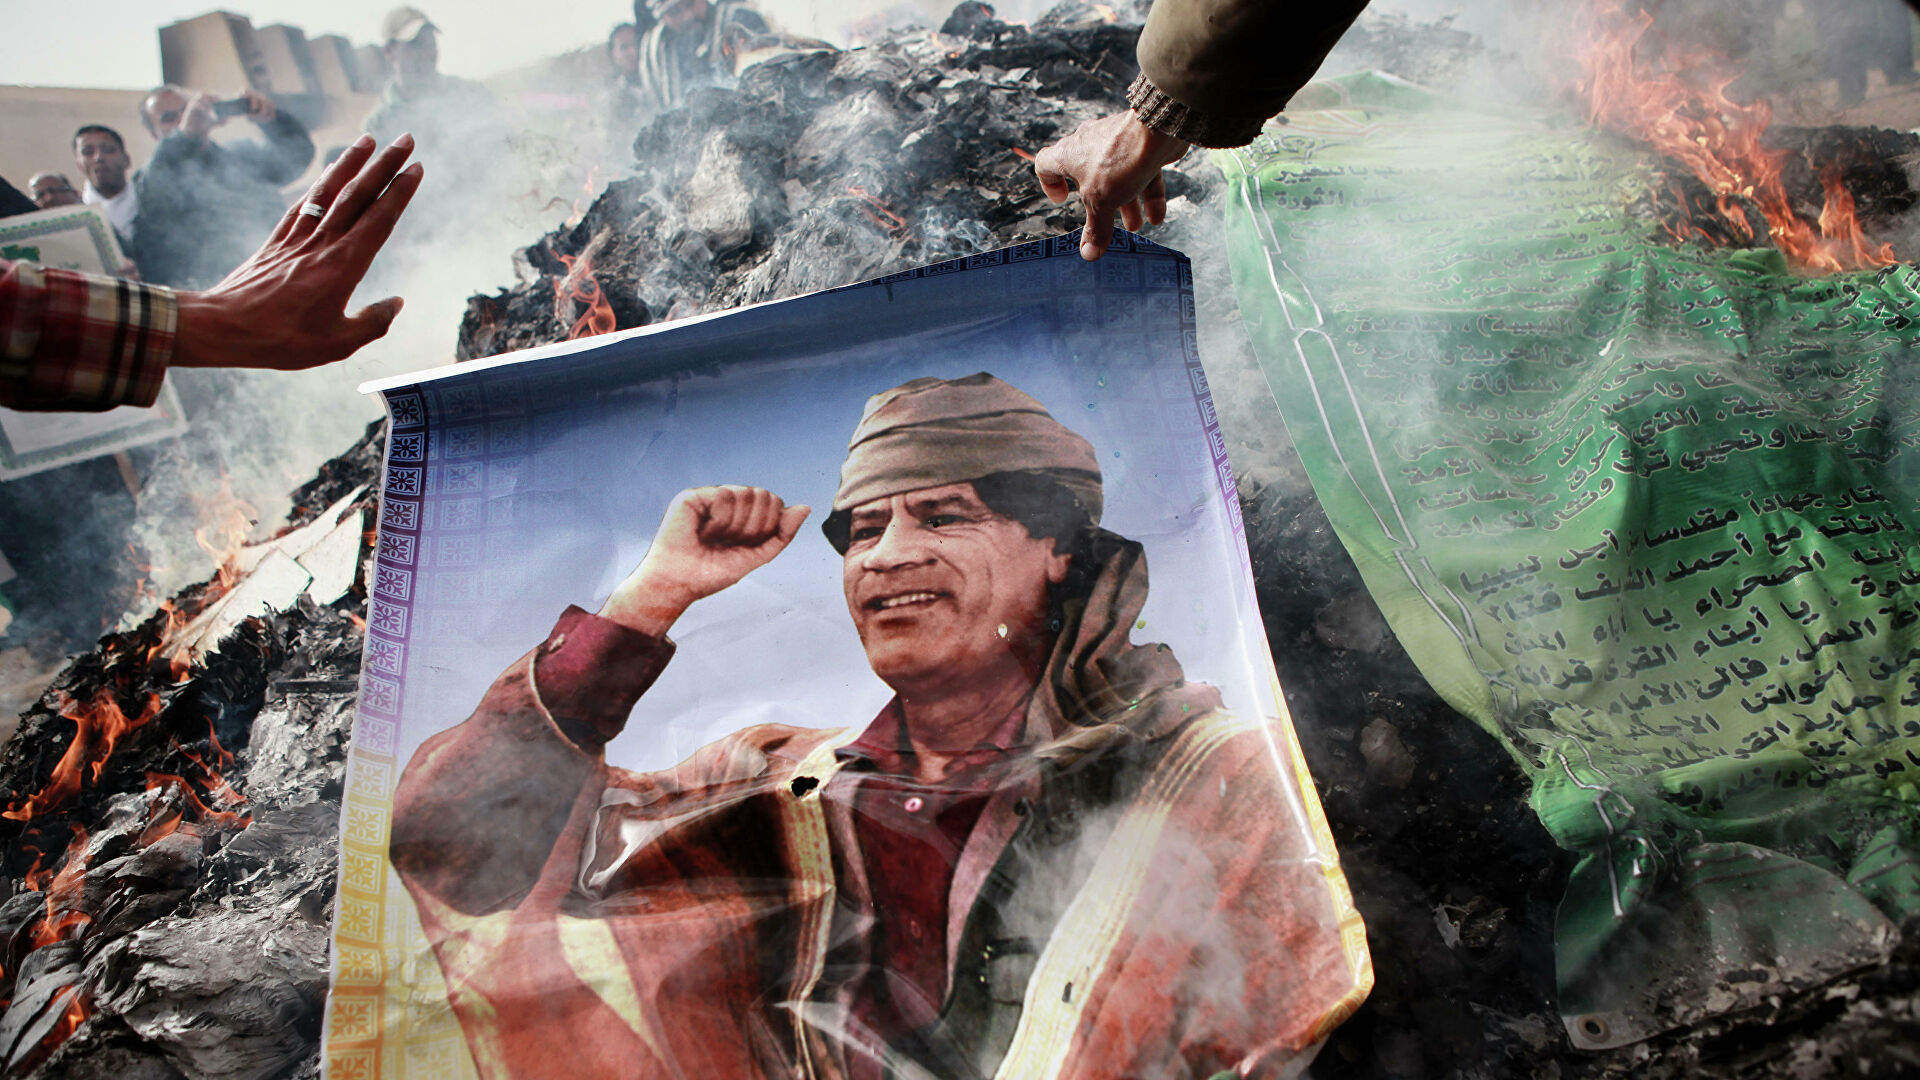 Протесты в Ливии в 2011г и вторжение НАТО были спланированы Западом: экс-соратник Каддафи 